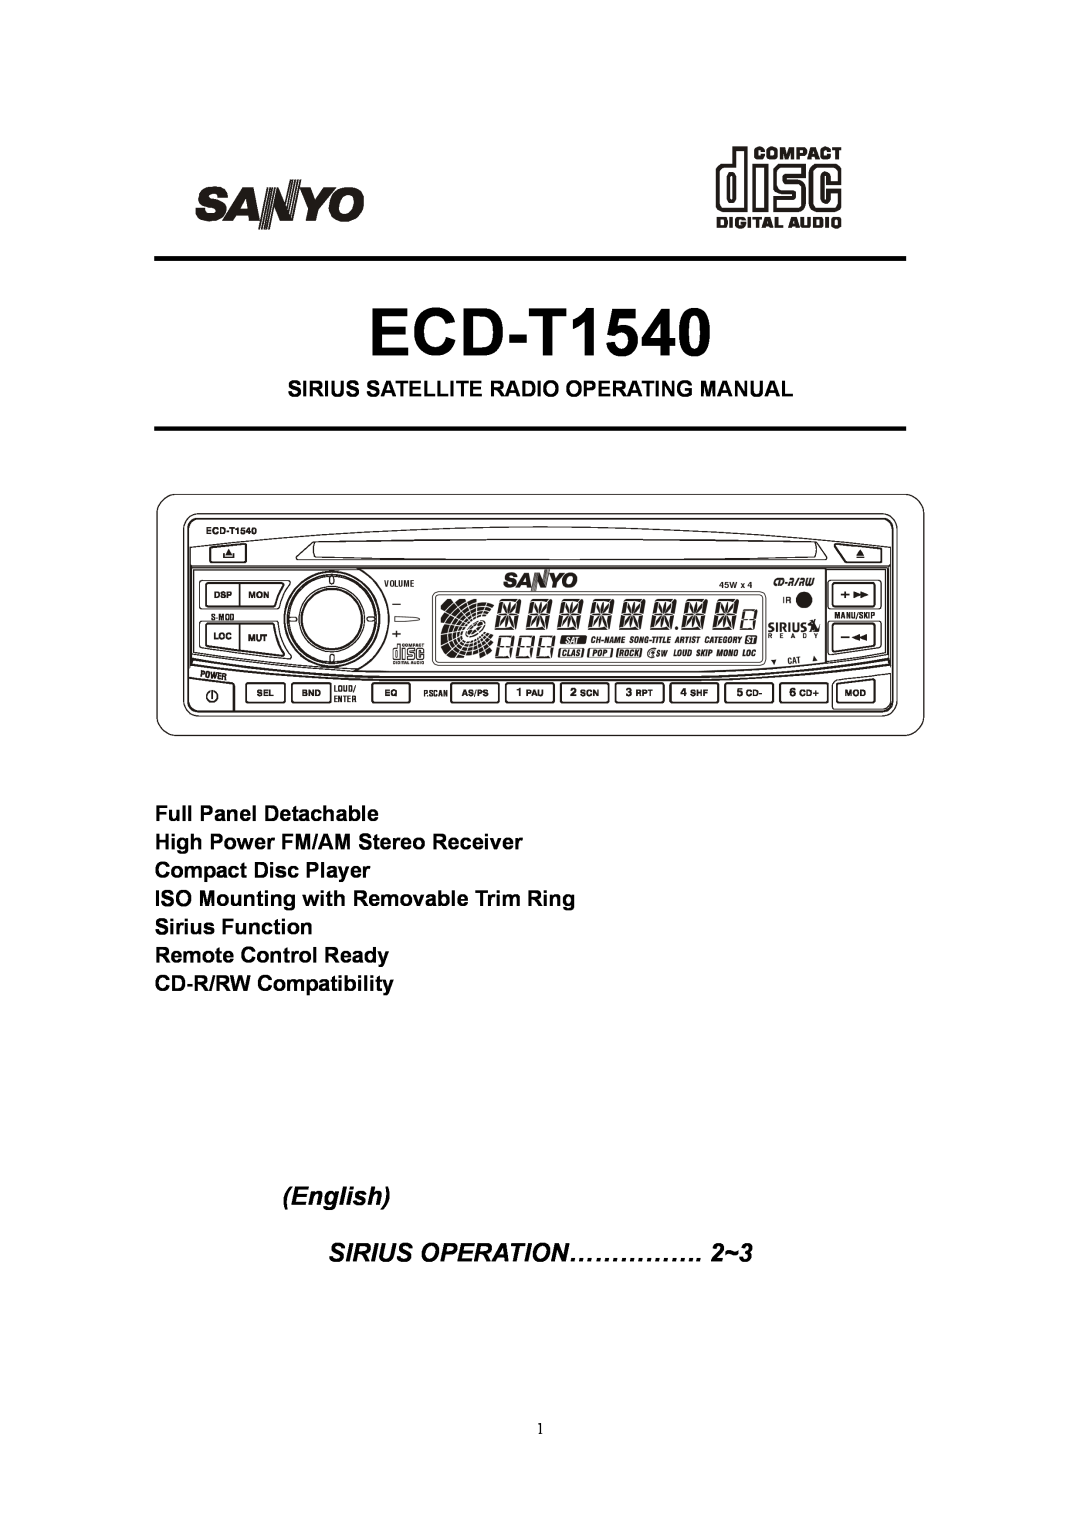 Sirius Satellite Radio ECD-T1540 manual English SIRIUS OPERATION……………. 2~3, Sirius Satellite Radio Operating Manual, 45W 